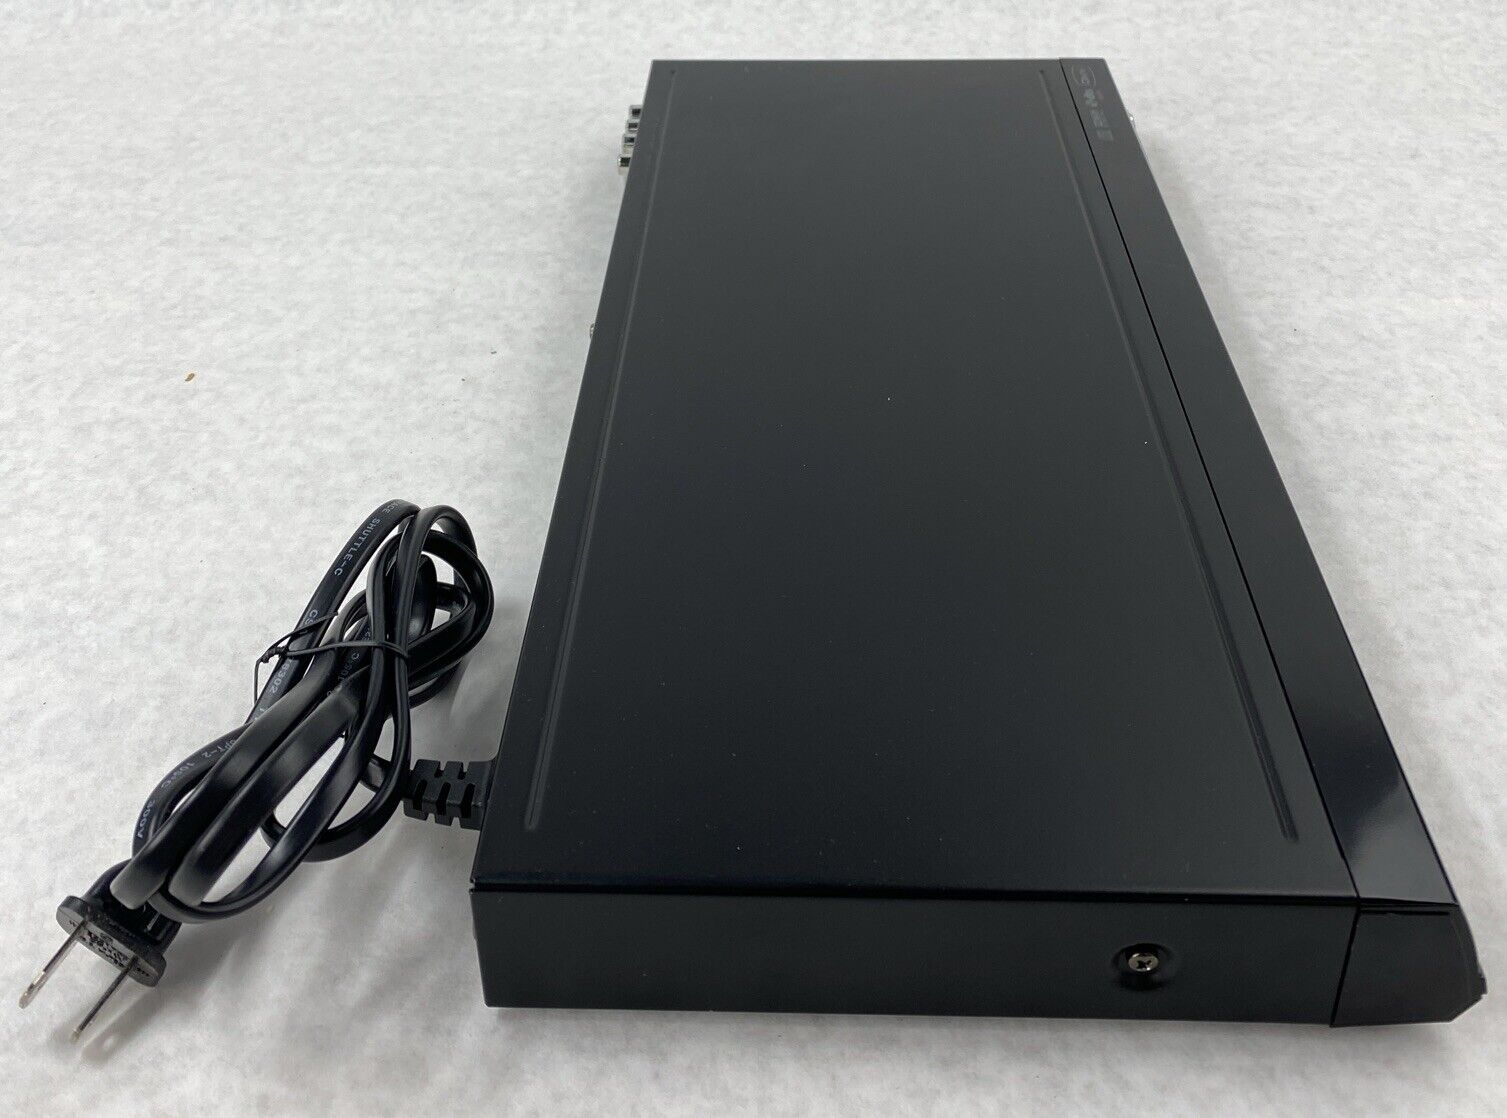 Toshiba SD-4000KU DVD Player Digital Cinema Progressive Black + REMOTE